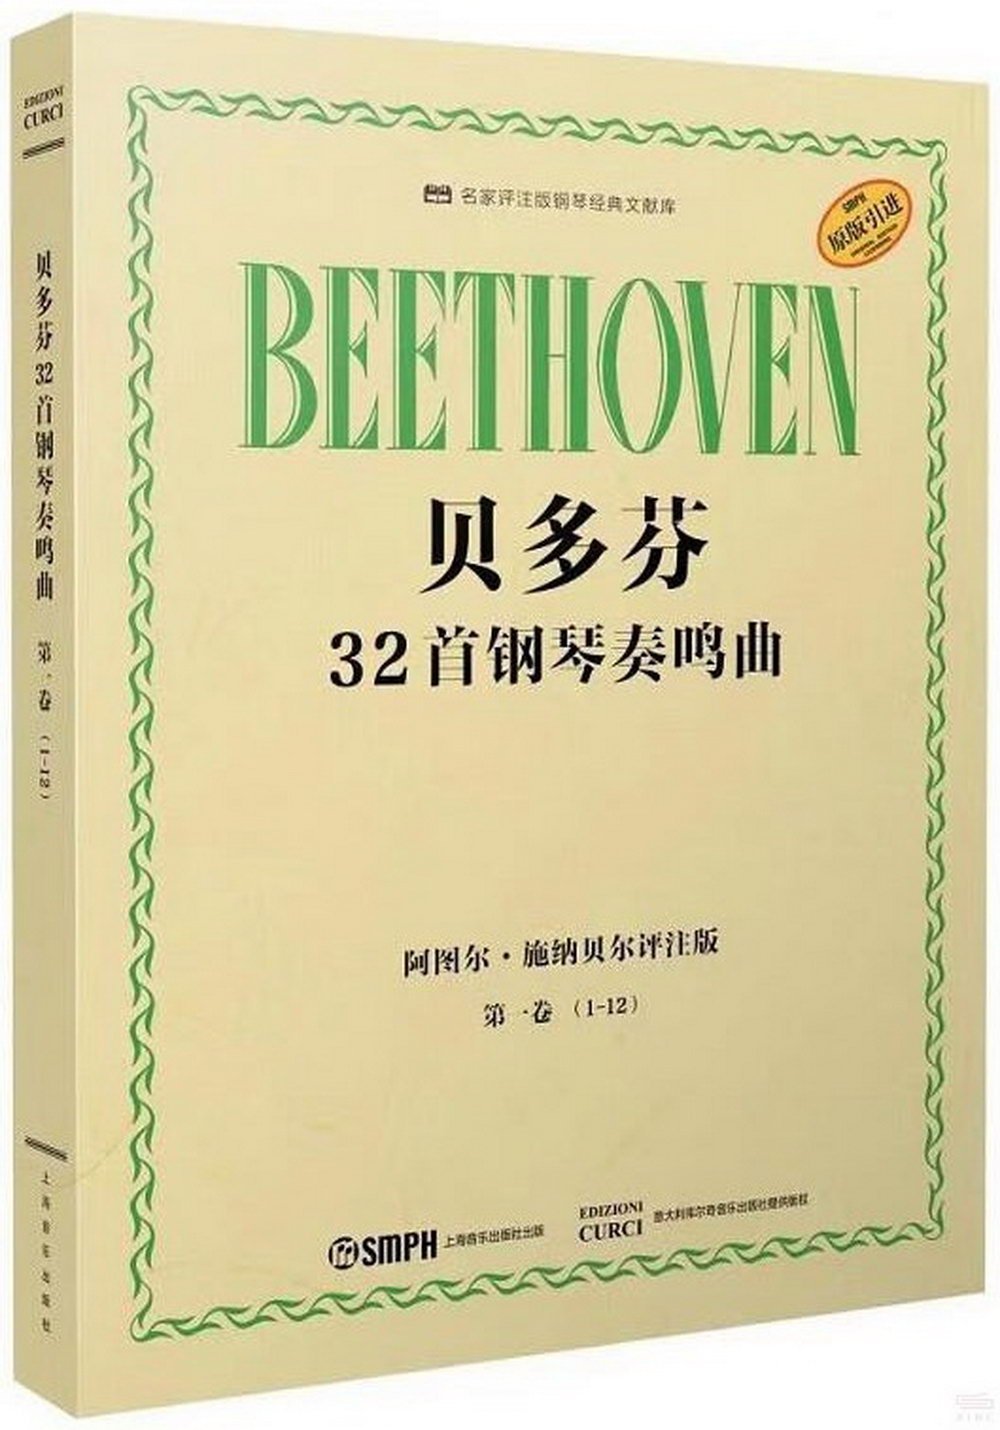 貝多芬32首鋼琴奏鳴曲：第一卷(1-12)(阿圖爾·施納貝爾評註版)